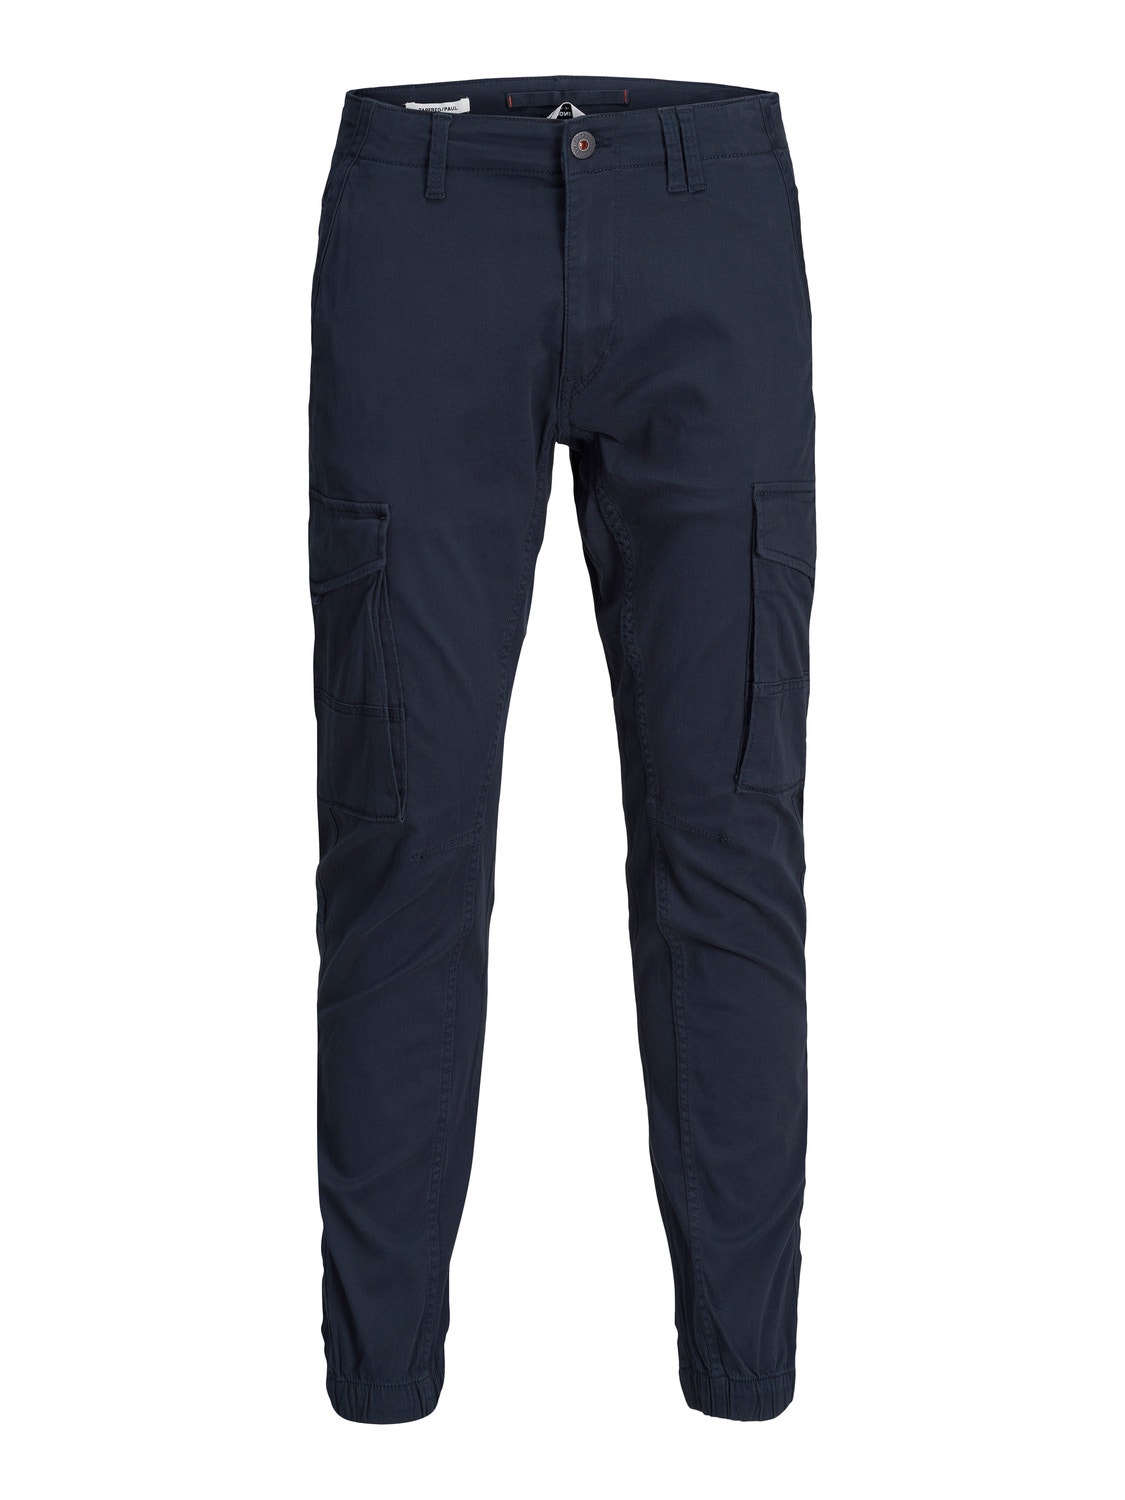 Jack & Jones Slim Fit Spodnie bojówki -Navy Blazer - 12169582